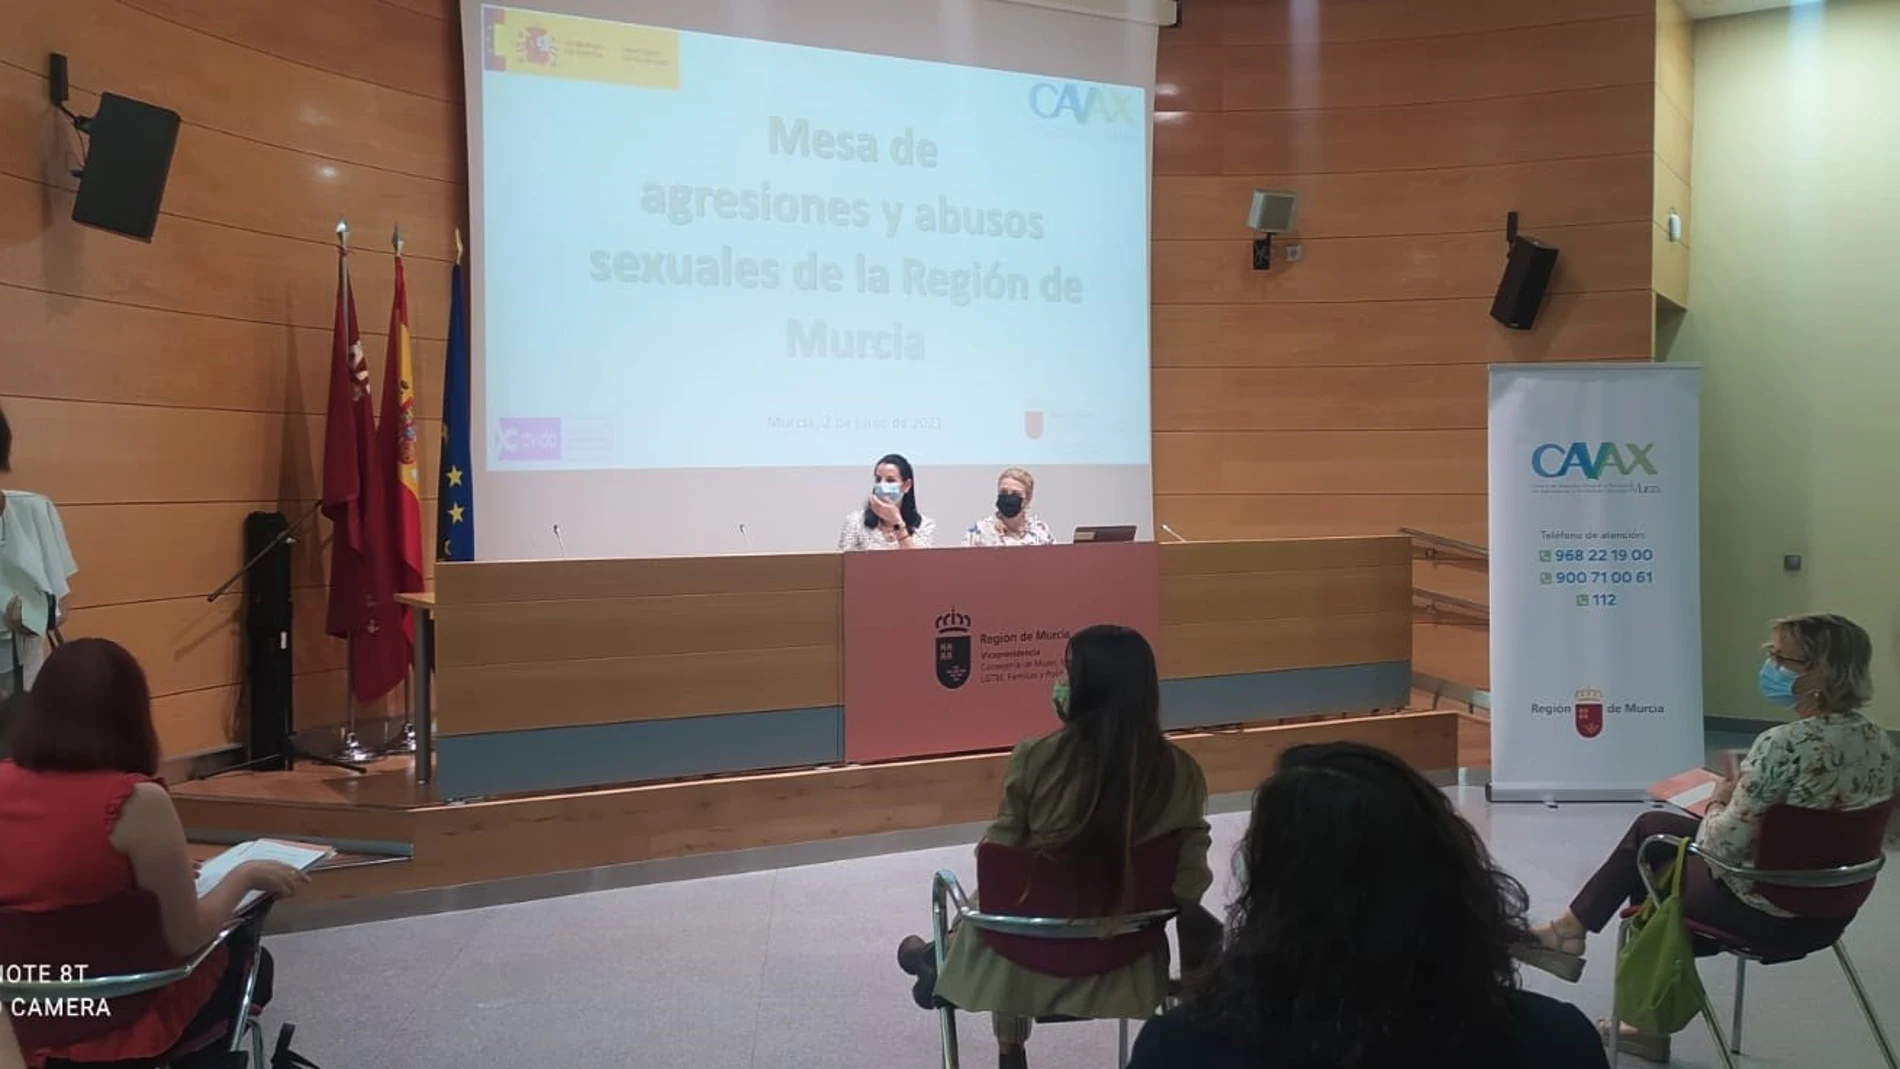 La directora general de Mujer, María José García, interviene en la Mesa de Agresiones y Abusos sexuales de la Región de Murcia.